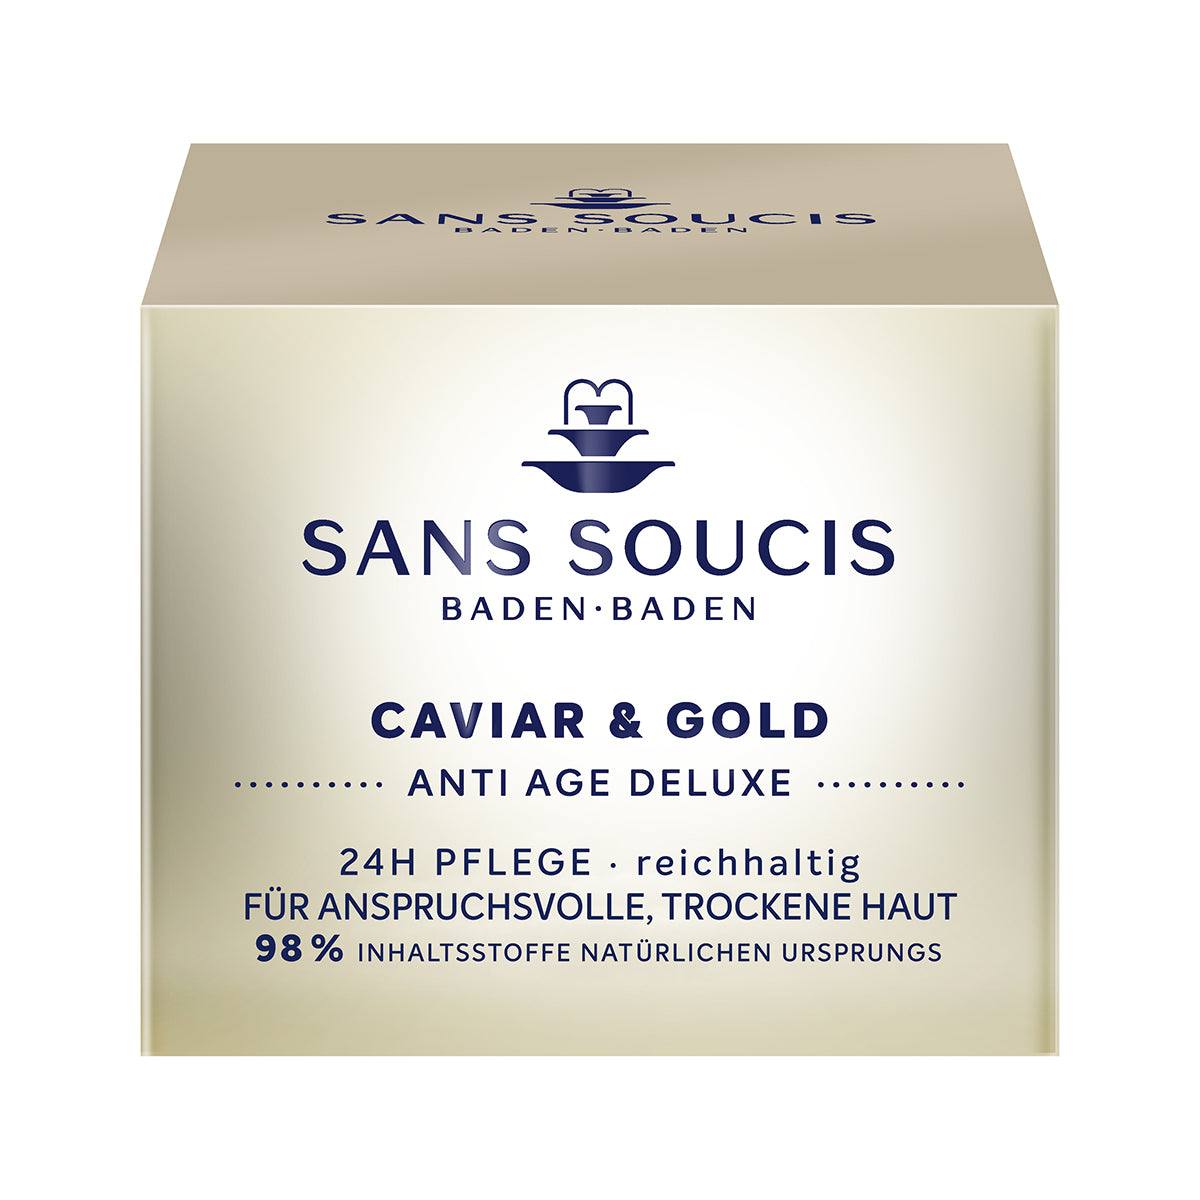 Caviar & Gold 24h Pflege reichhaltig